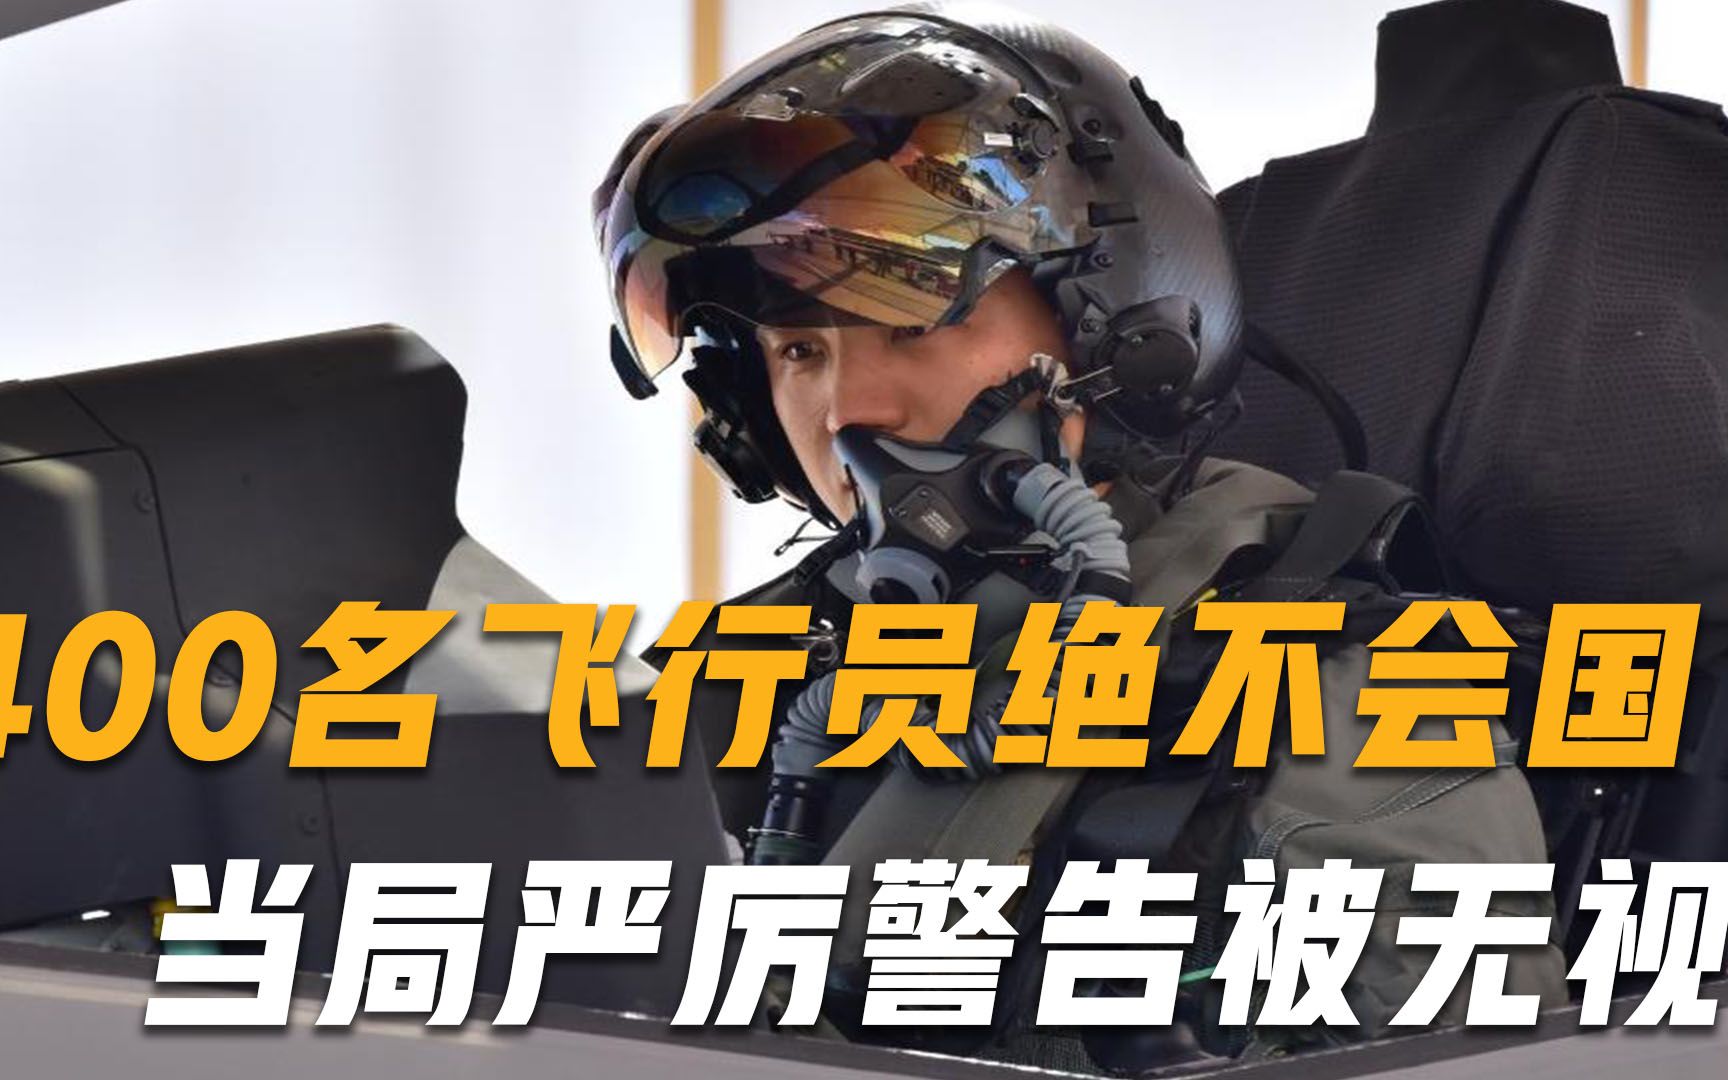 “绝不回国”！400名飞行员执意“投奔”中国，当局严厉警告被无视